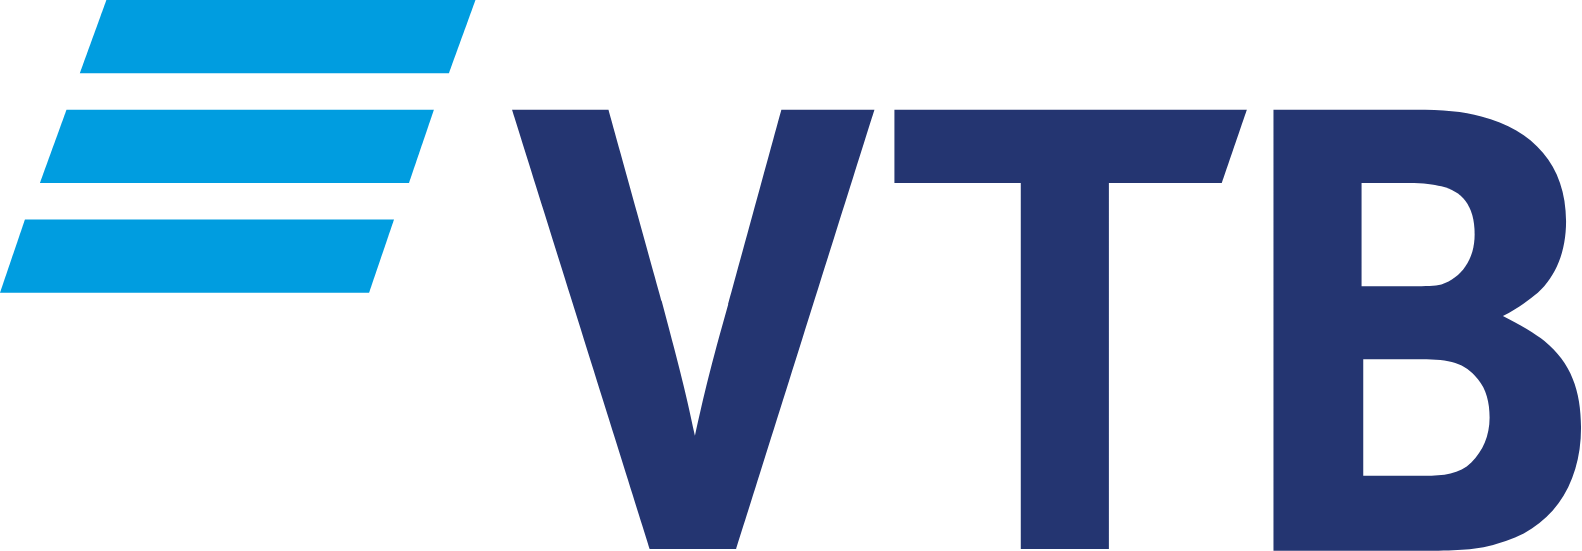 VTB Bank logo large (transparent PNG)